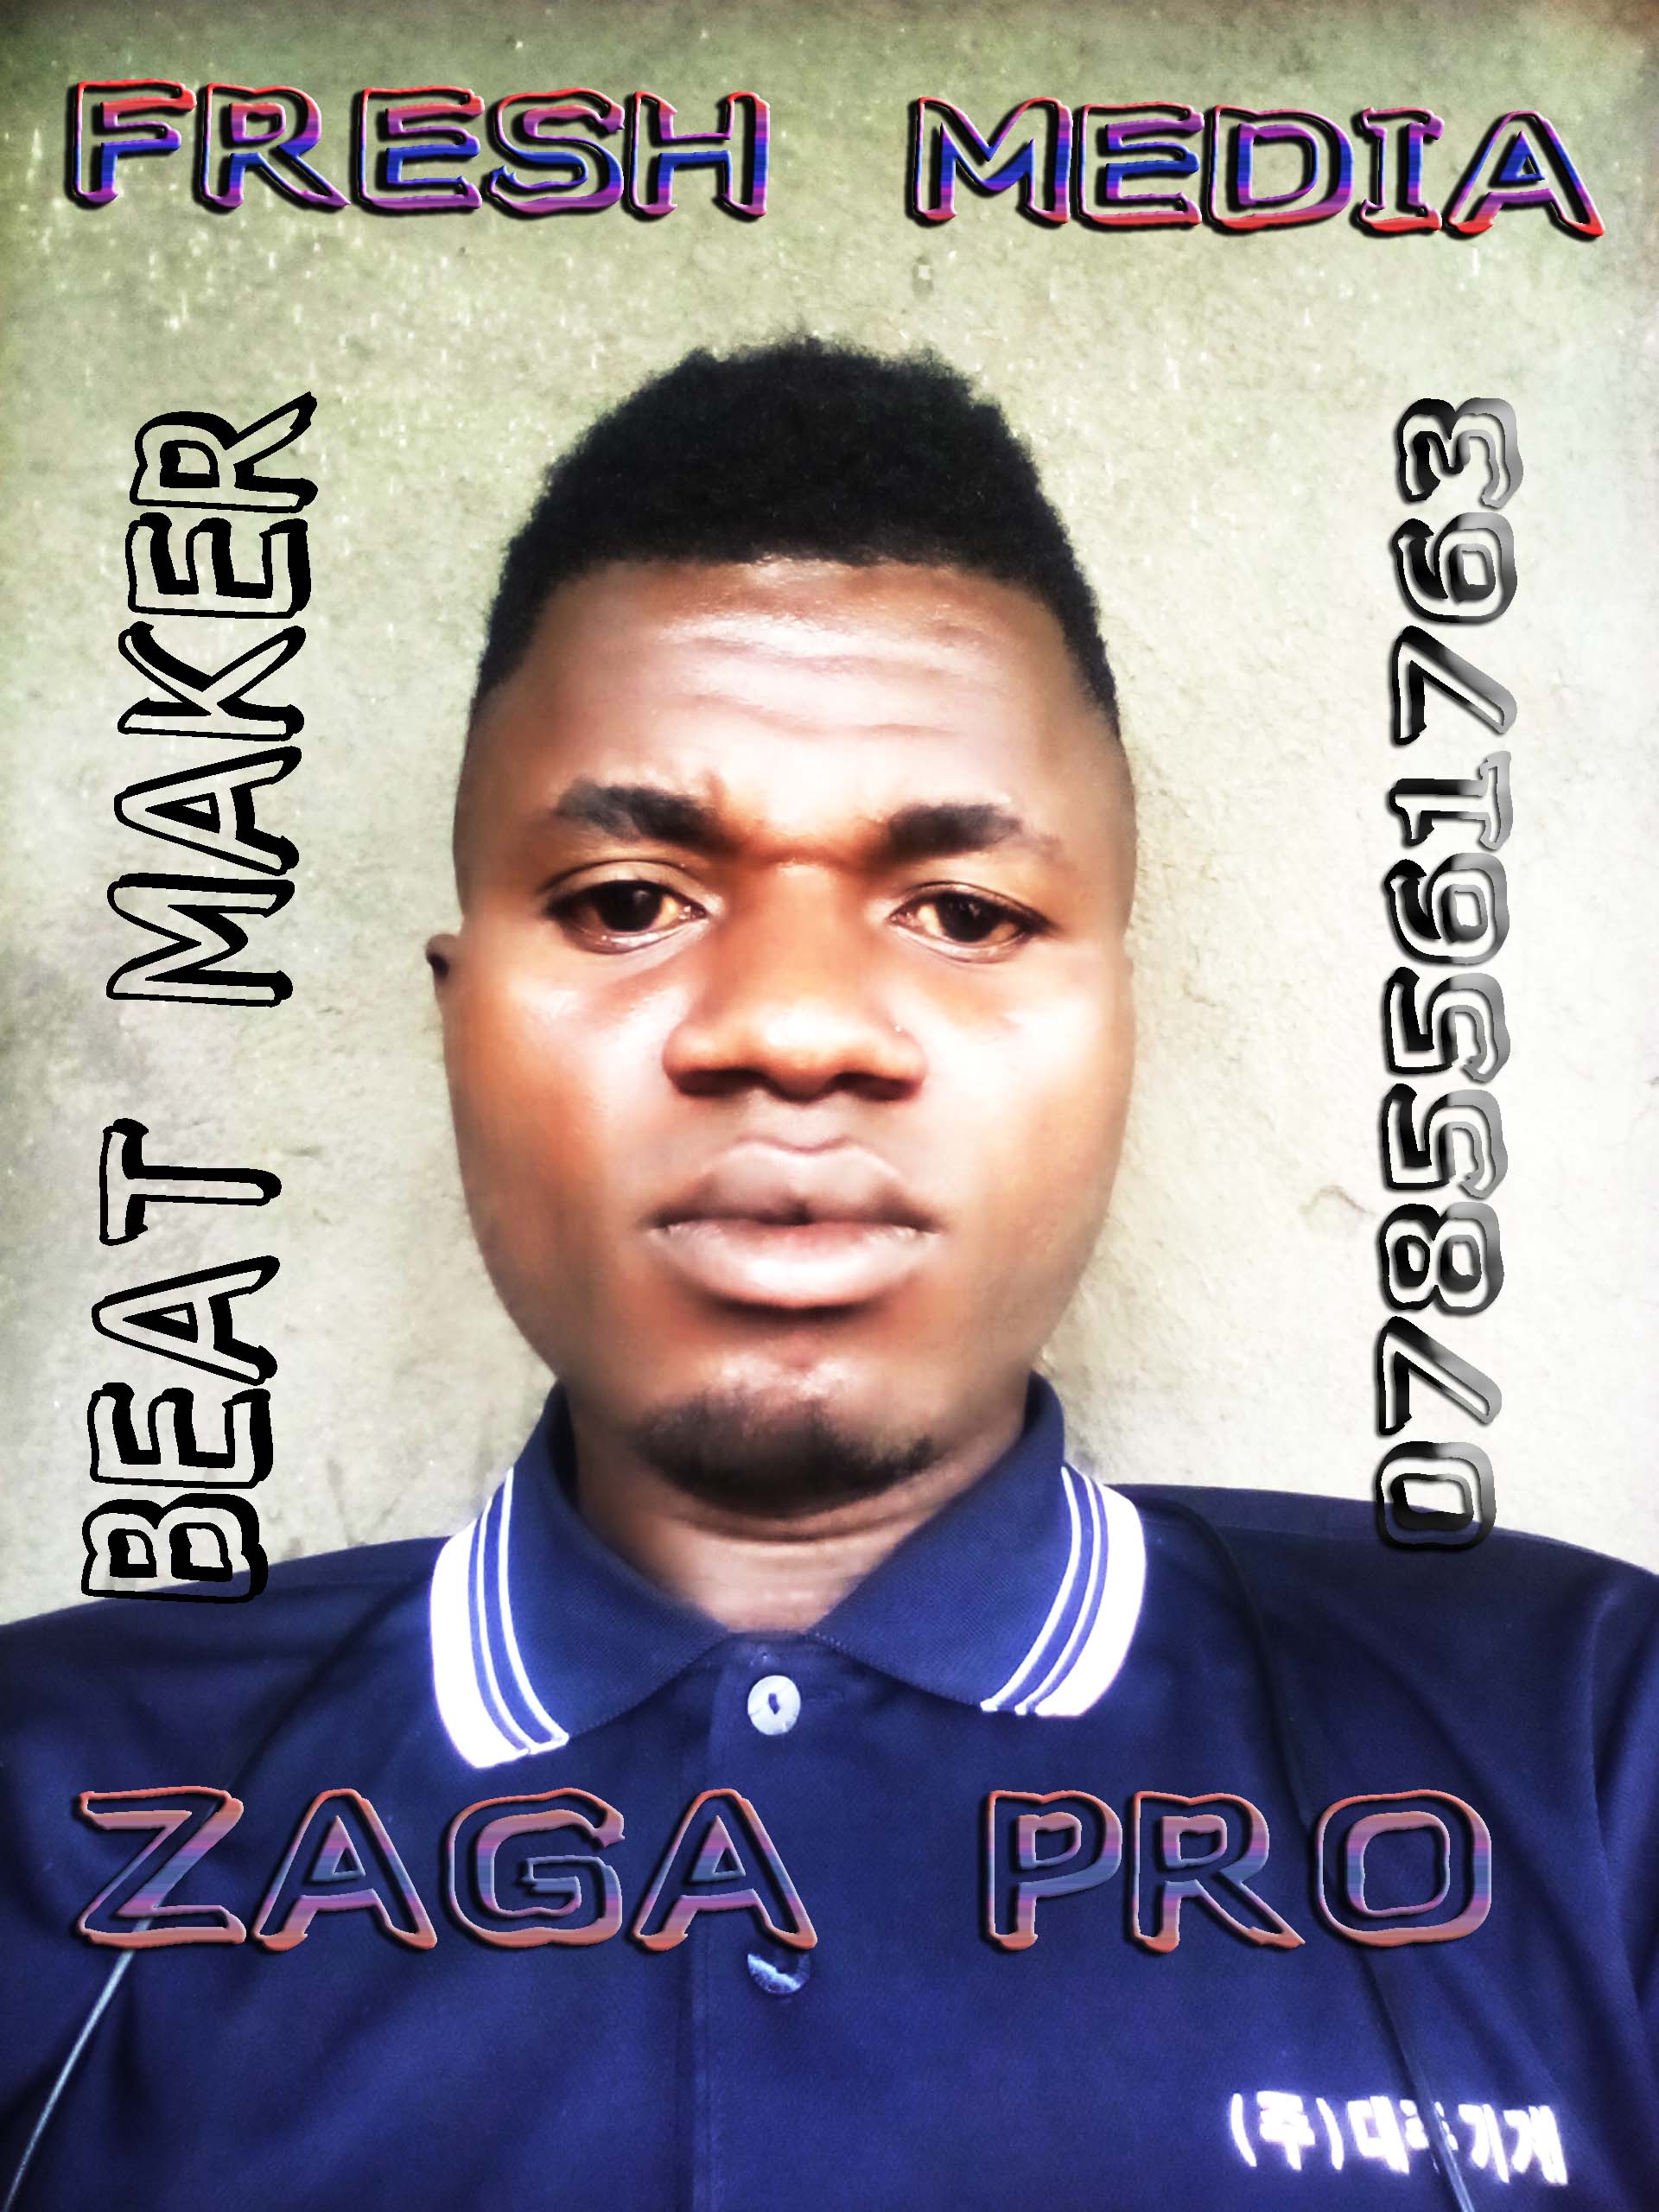 Zaga Pro